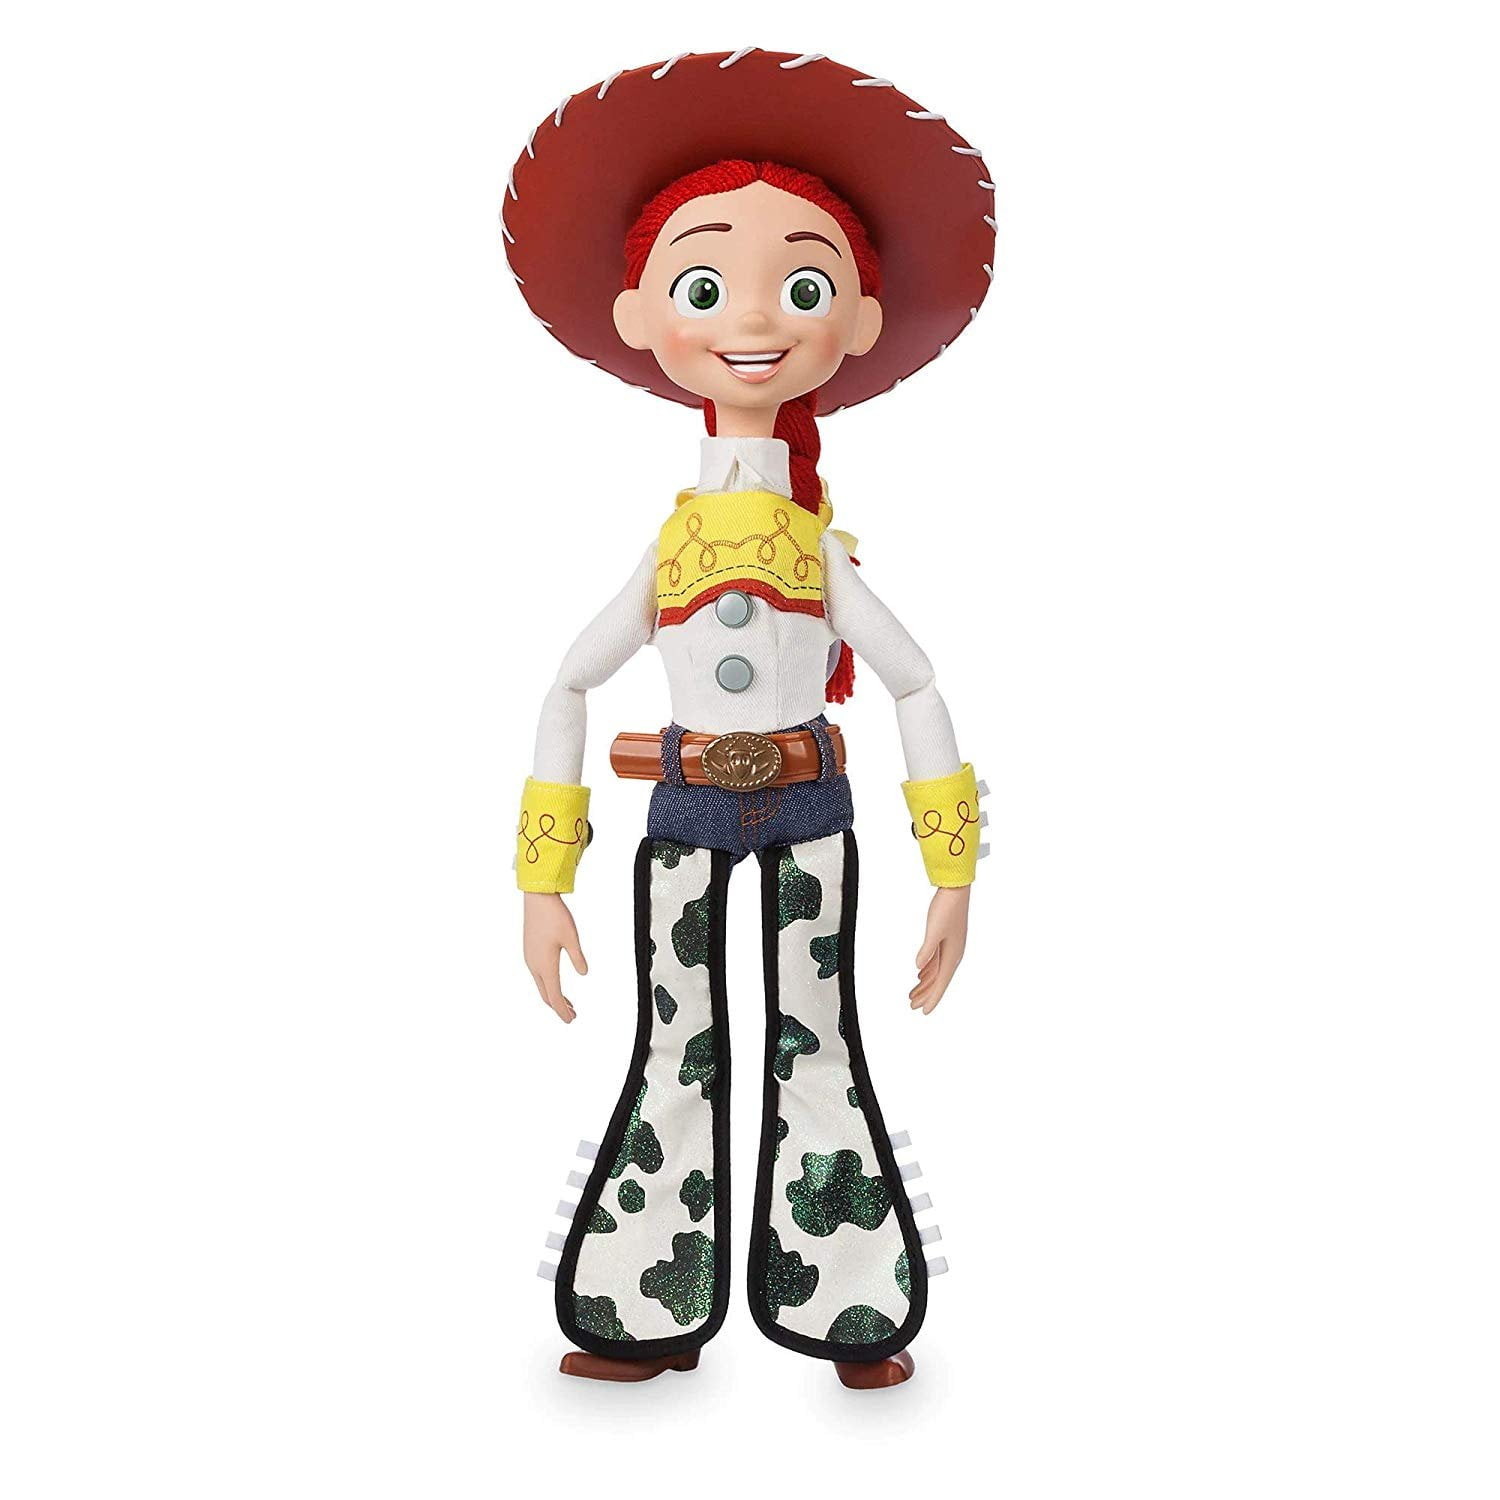 Disney Pixar Toy Story Présentoir 2 Figure Pack Jessie & Bullseye 